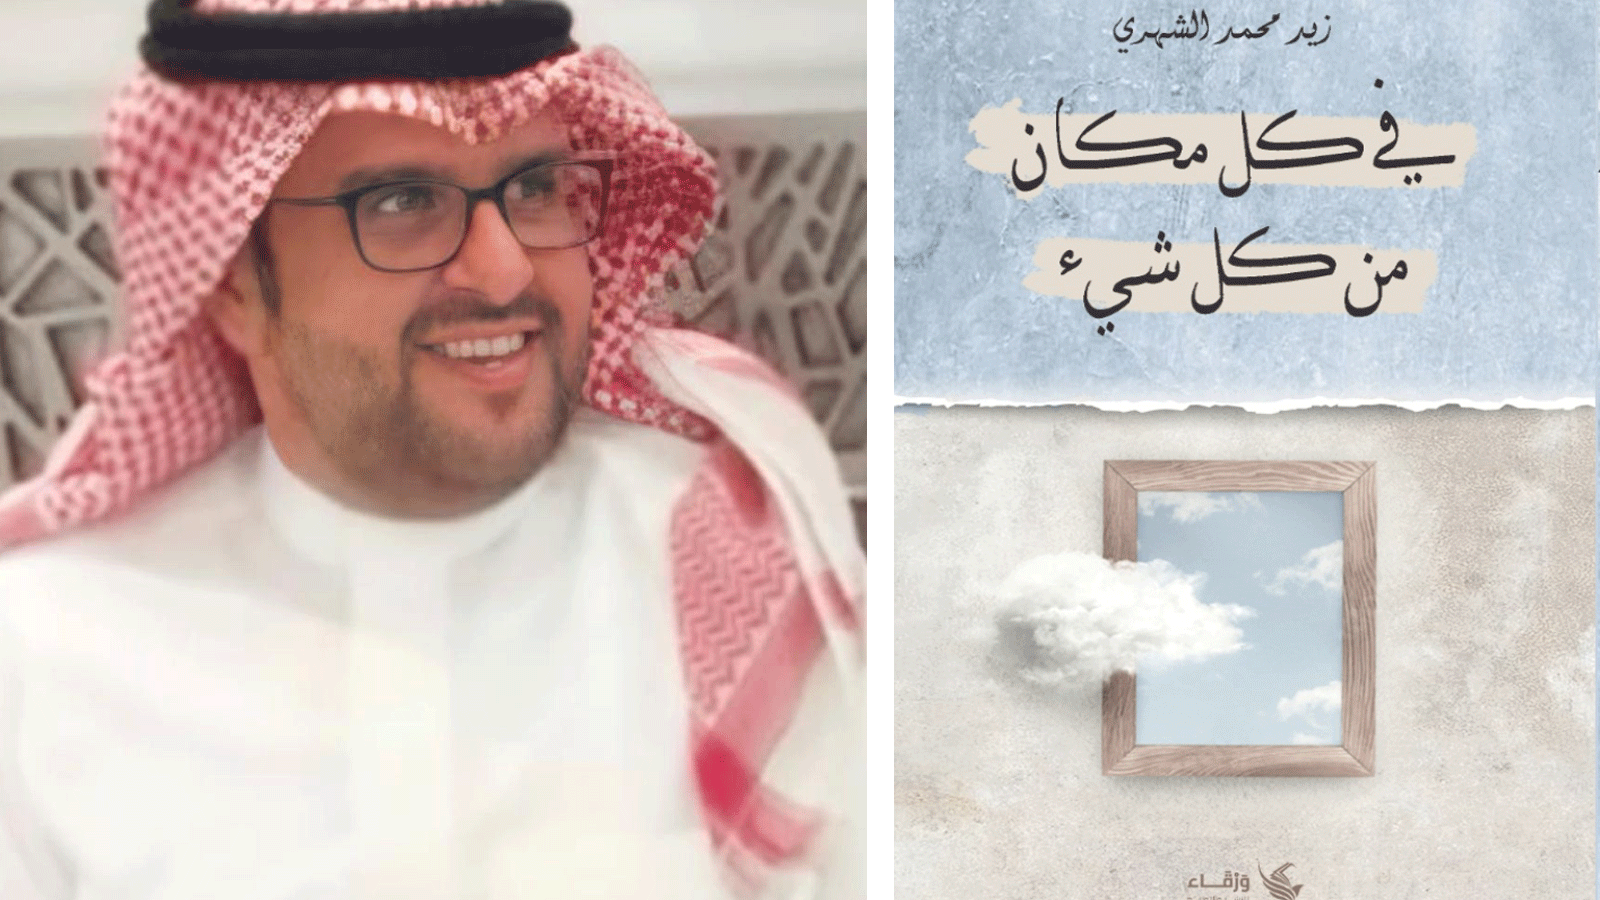 الكاتب زيد محمد الشهري مع غلاف كتابه بعنوان: 